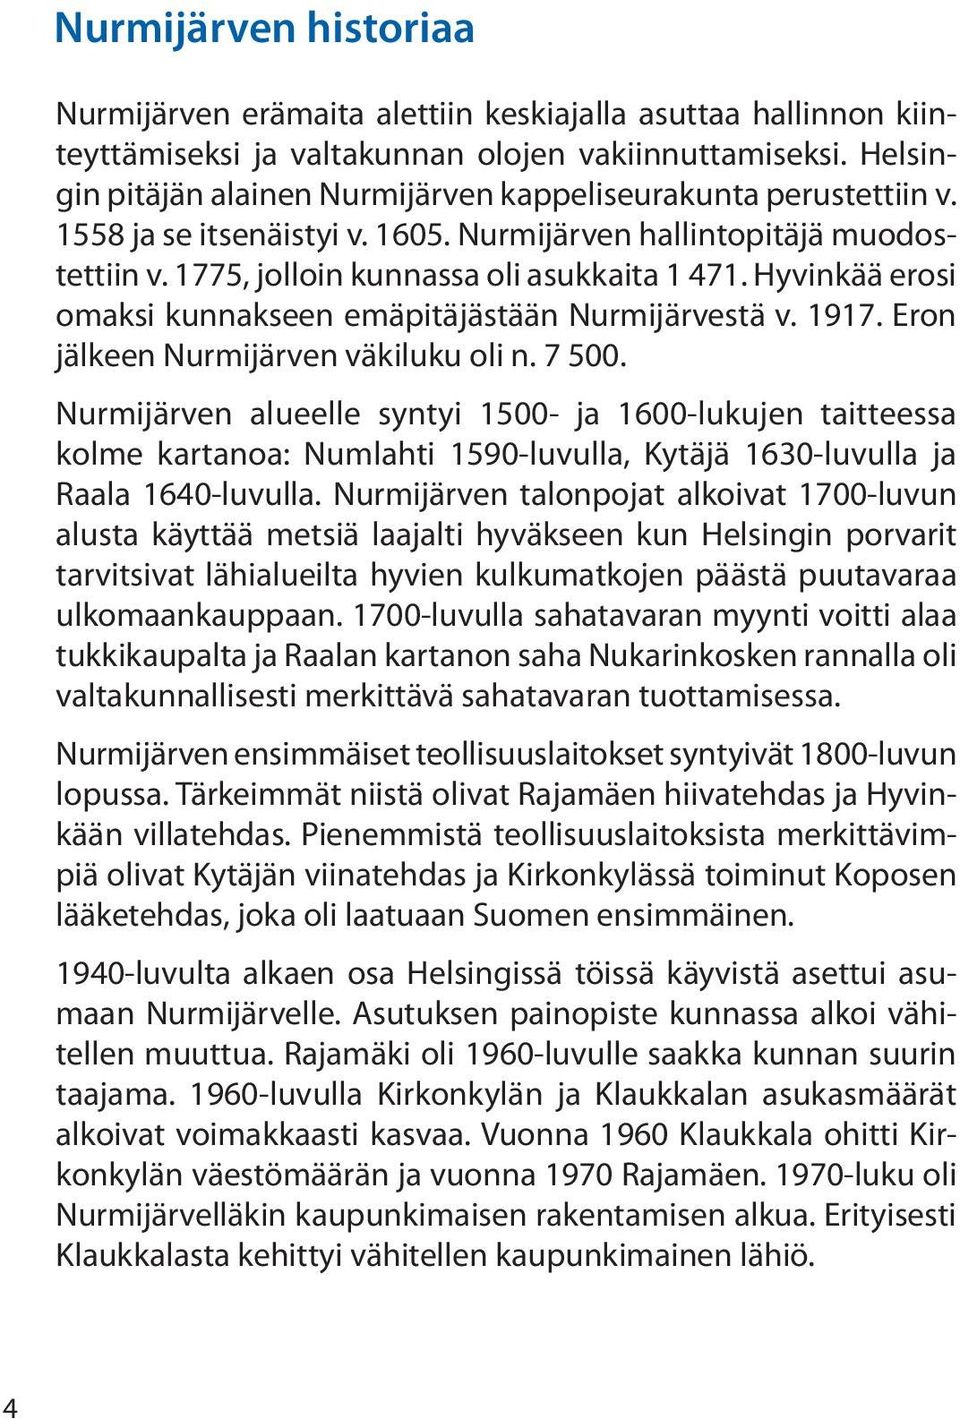 Hyvinkää erosi omaksi kunnakseen emäpitäjästään Nurmijärvestä v. 1917. Eron jälkeen Nurmijärven väkiluku oli n. 7 500.